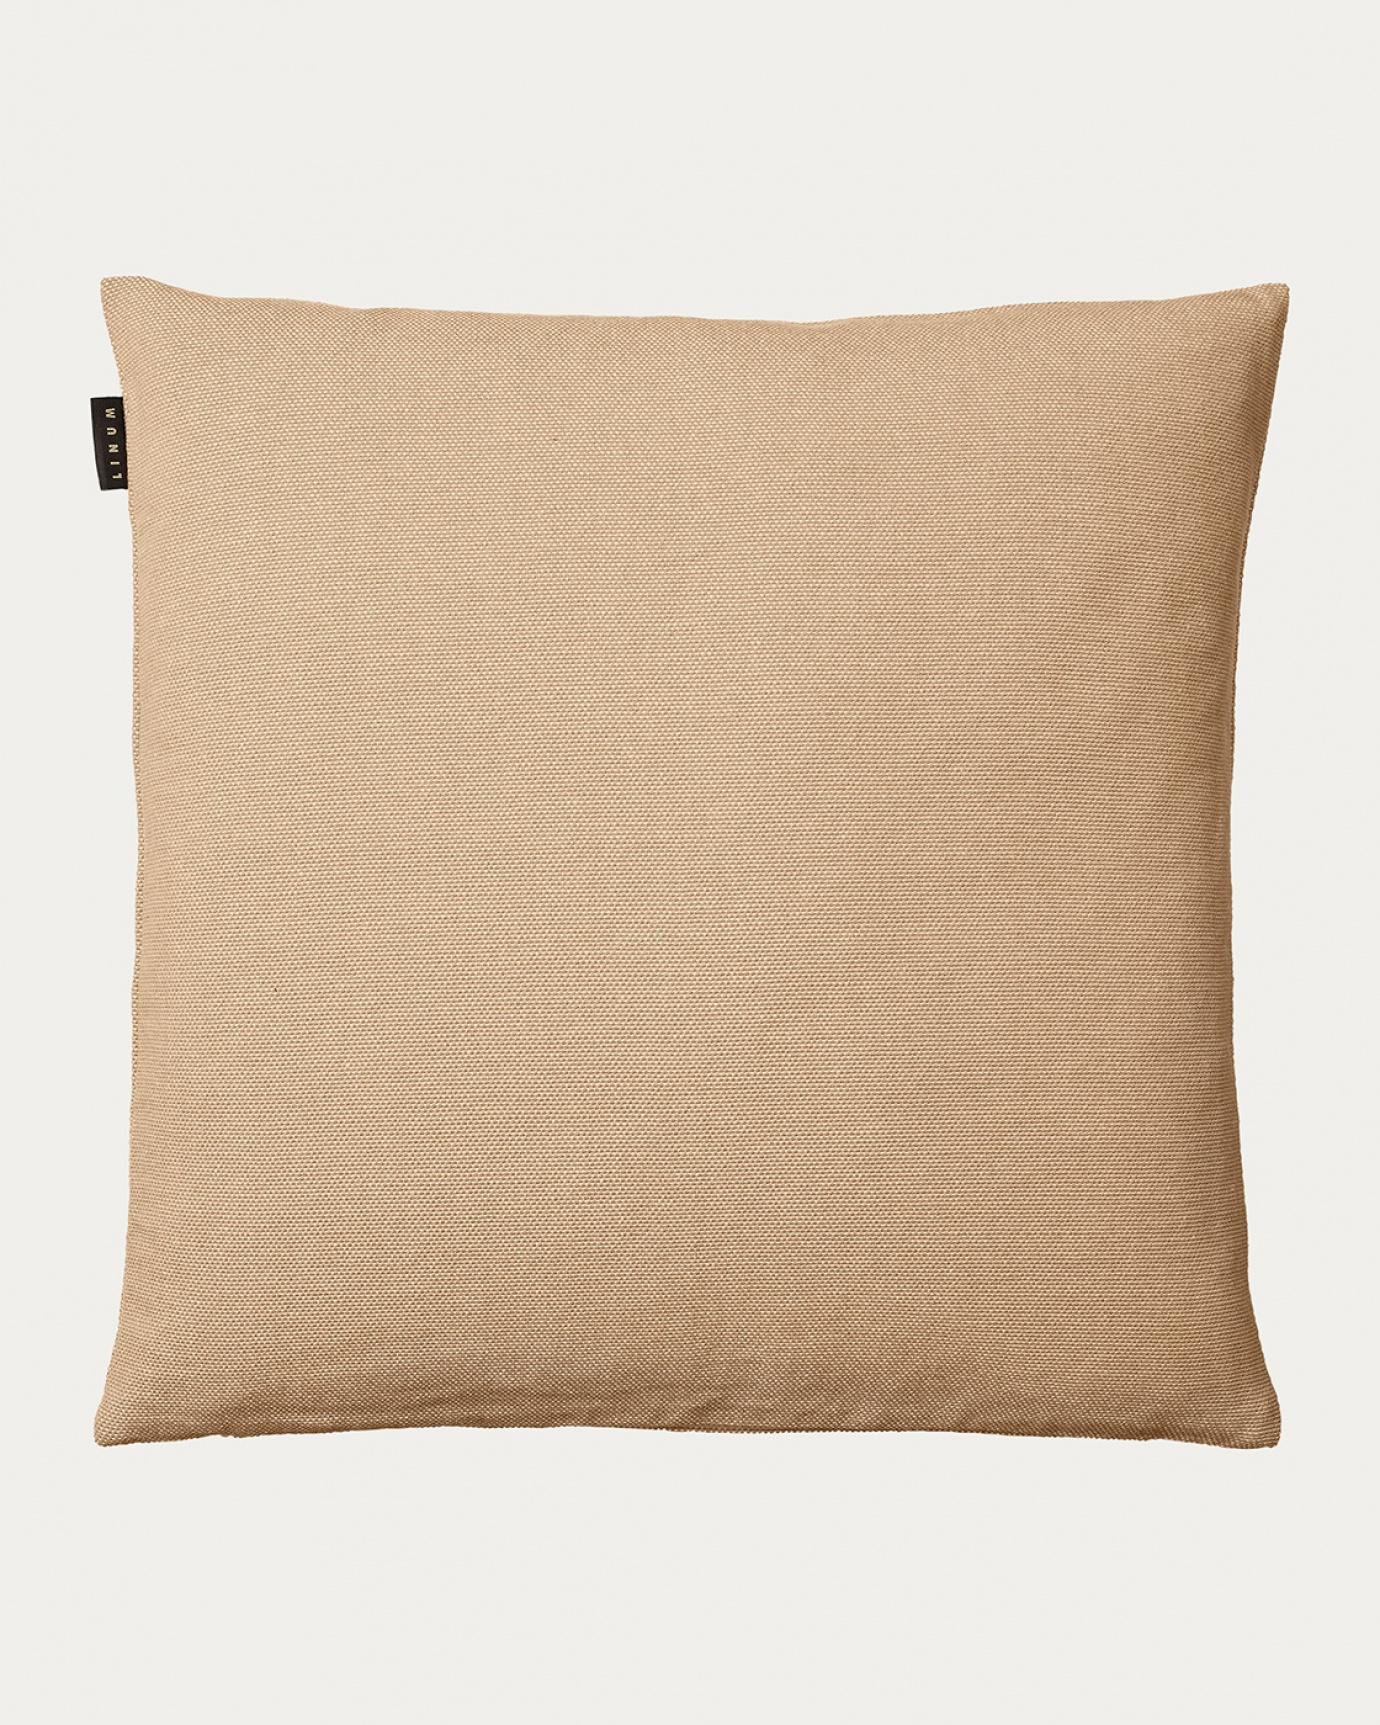 Produktbild kamelbraun PEPPER Kissenhülle aus weicher Baumwolle von LINUM DESIGN. Einfach zu waschen und langlebig für Generationen. Größe 60x60 cm.